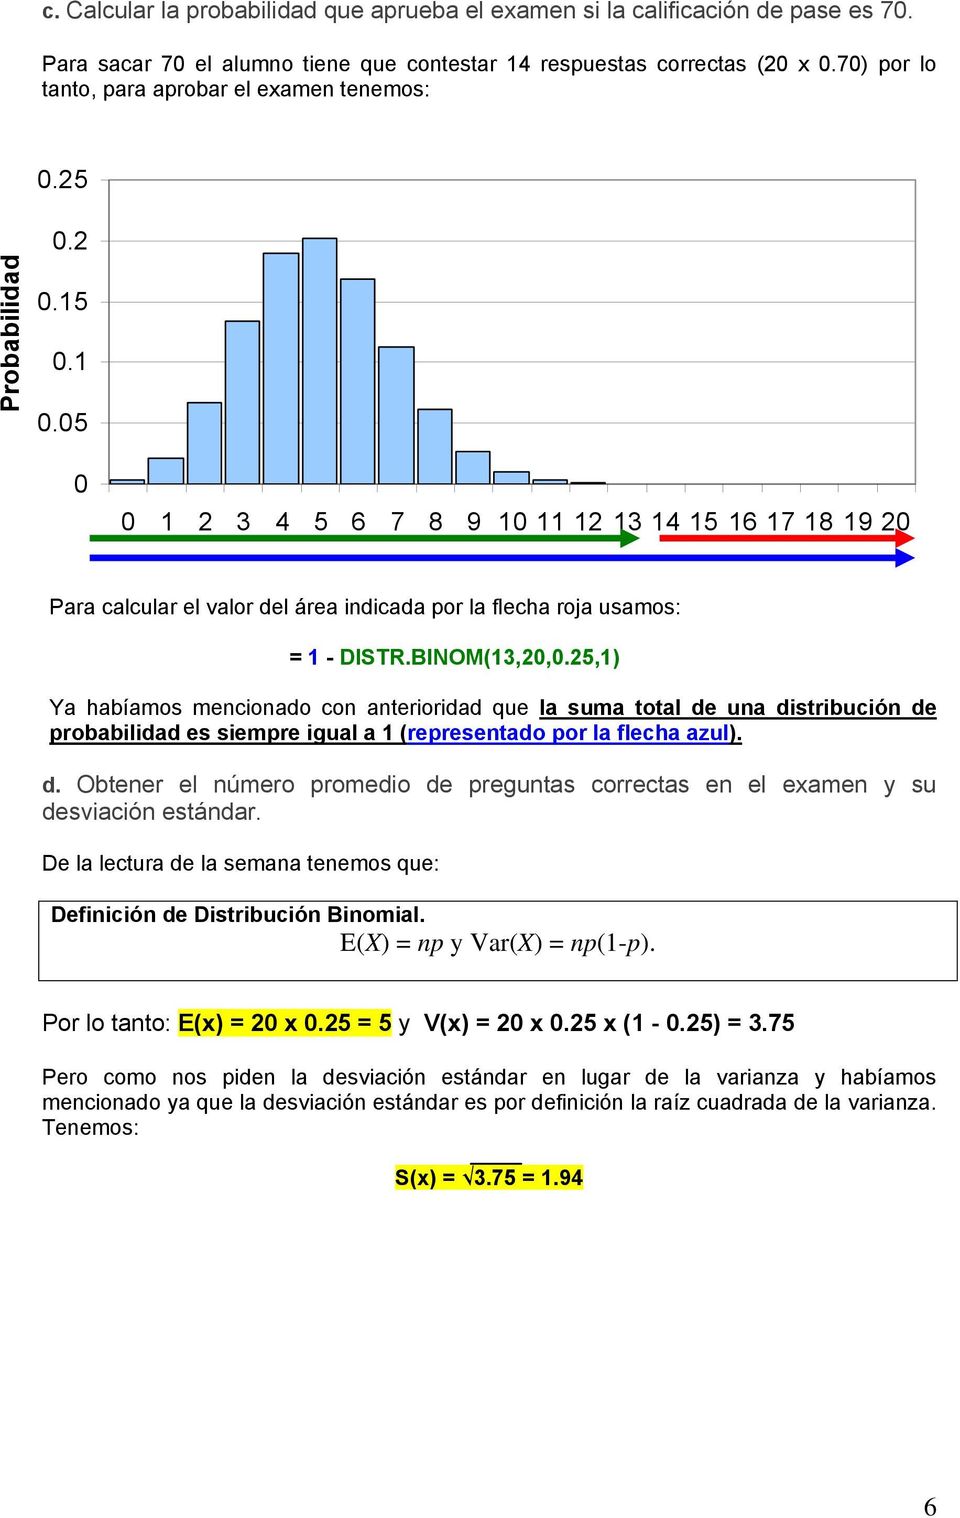 BINOM(13,2,5,1) Ya habíamos mencionado con anterioridad que la suma total de una distribución de probabilidad es siempre igual a 1 (representado por la flecha azul). d. Obtener el número promedio de preguntas correctas en el examen y su desviación estándar.